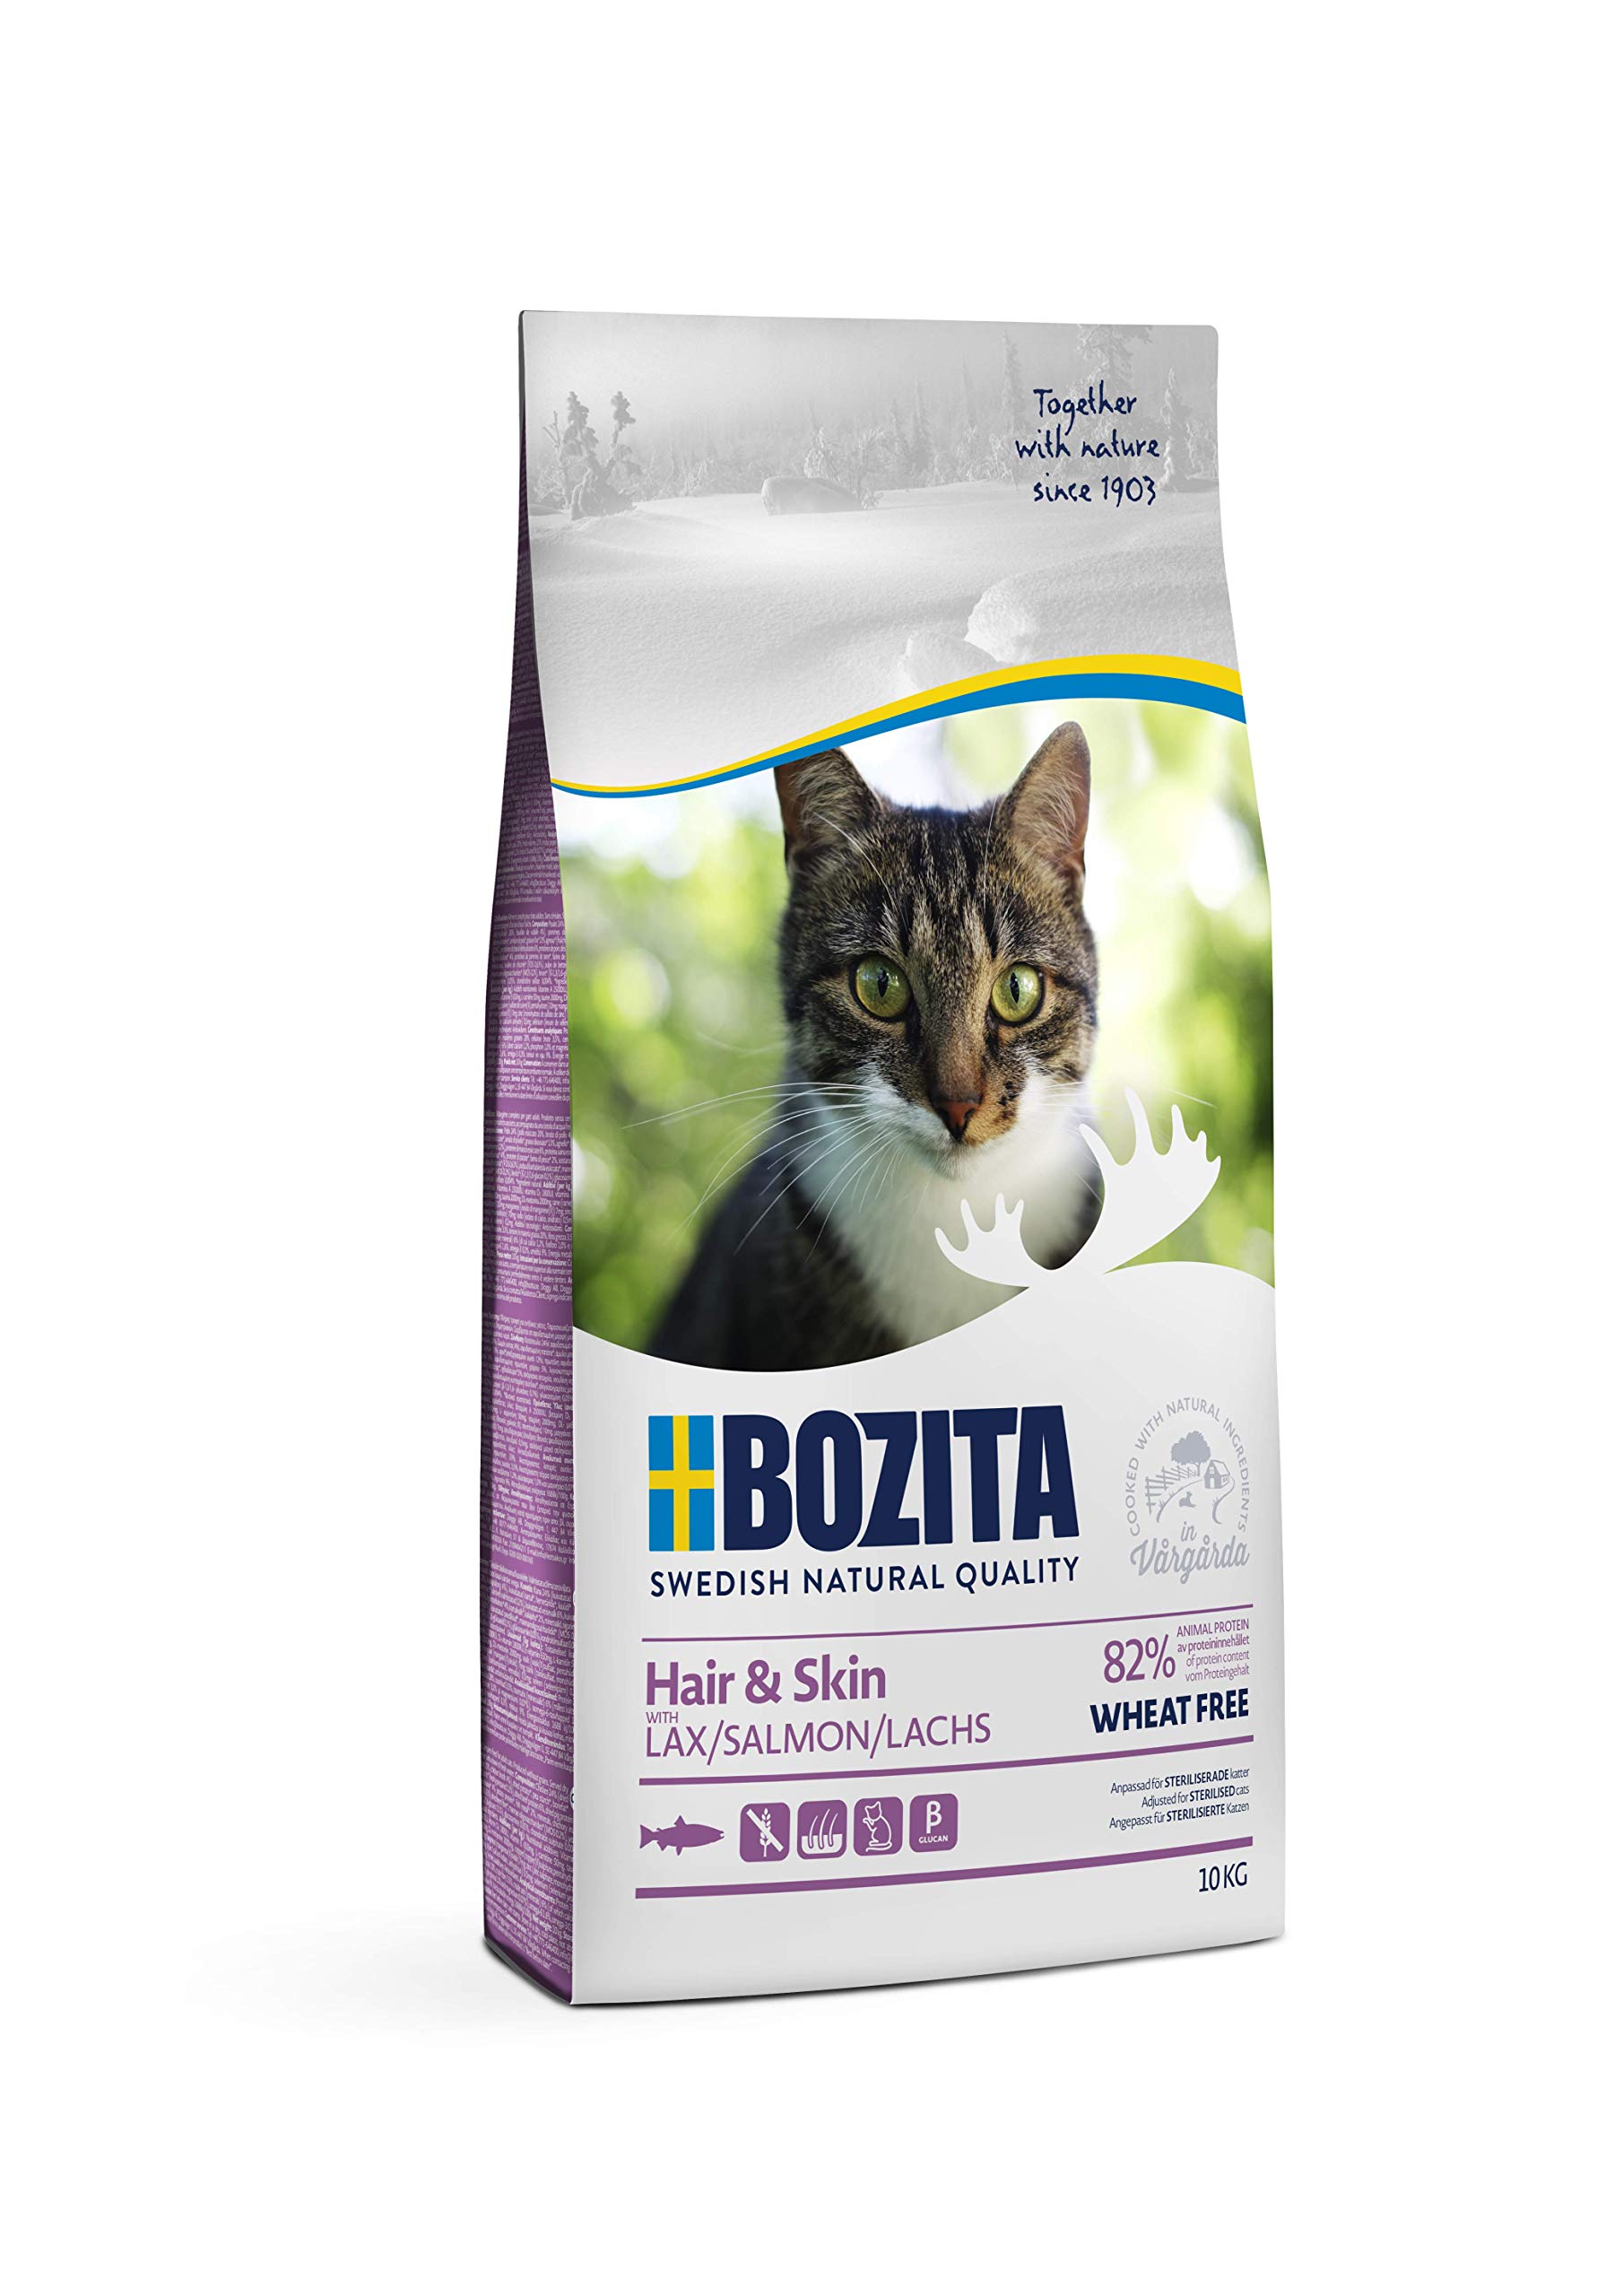 BOZITA Hair & Skin Weizenfrei mit Lachs - Trockenfutter für erwachsene Katzen, dass Haut- und Fellpflege unterstützt, 10 kg